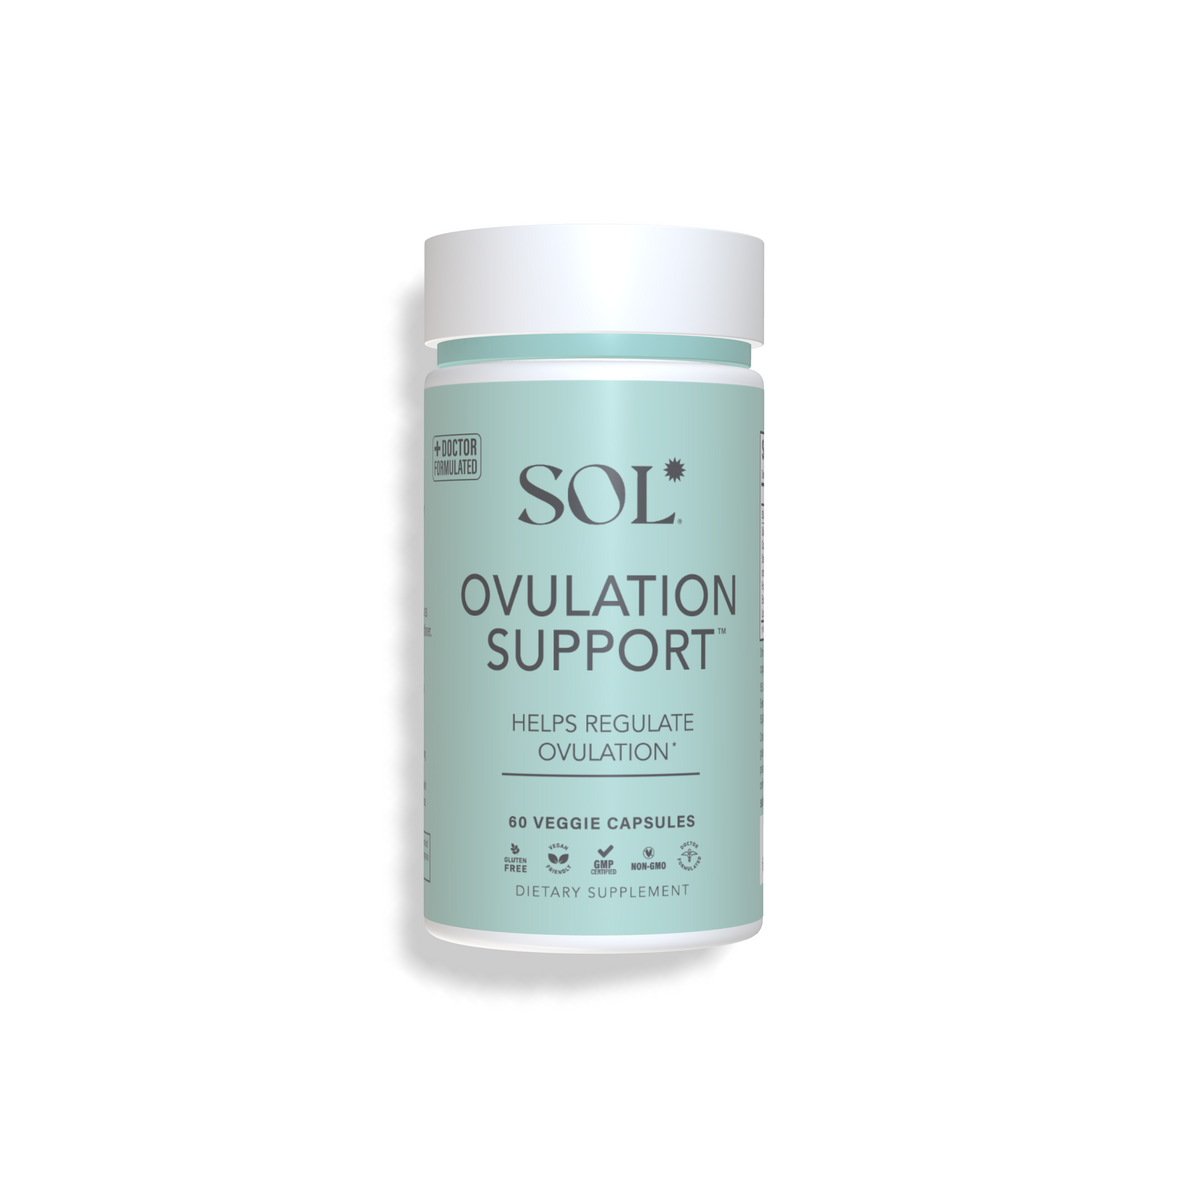 Ovulation Support